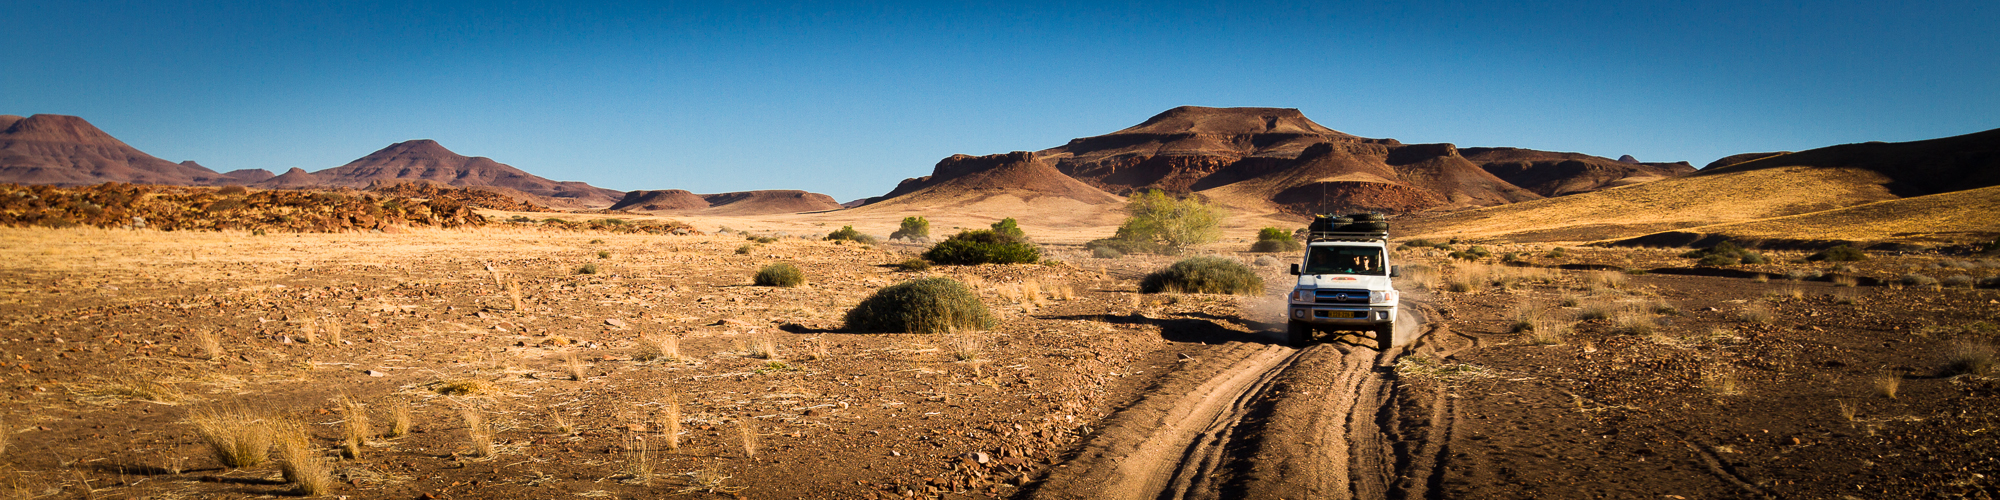 namibia gravel travel